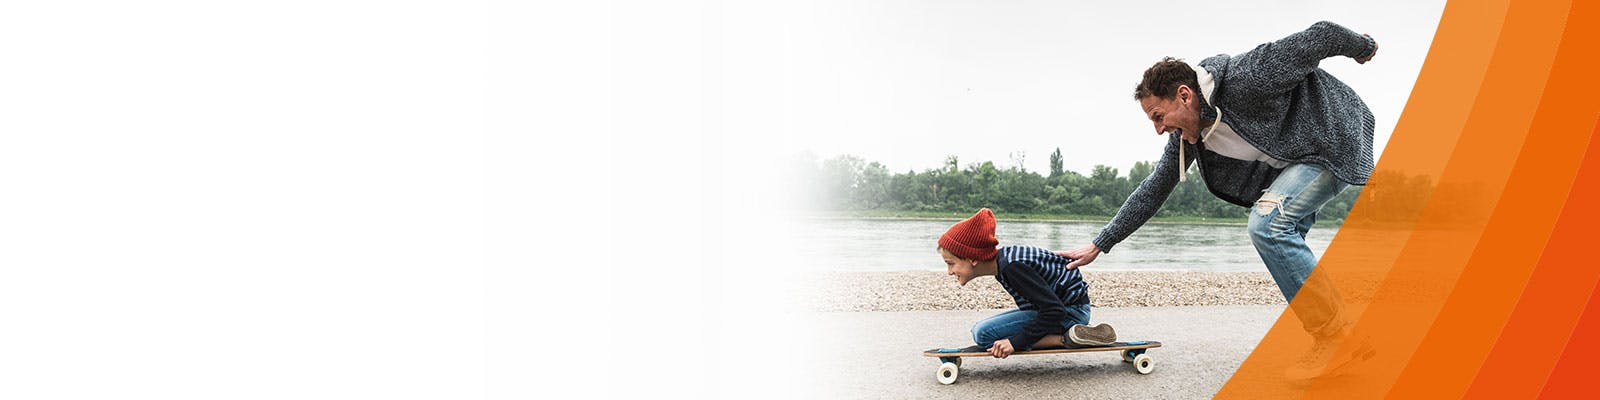 man knuffar sin son på en skateboard utan knäsmärta